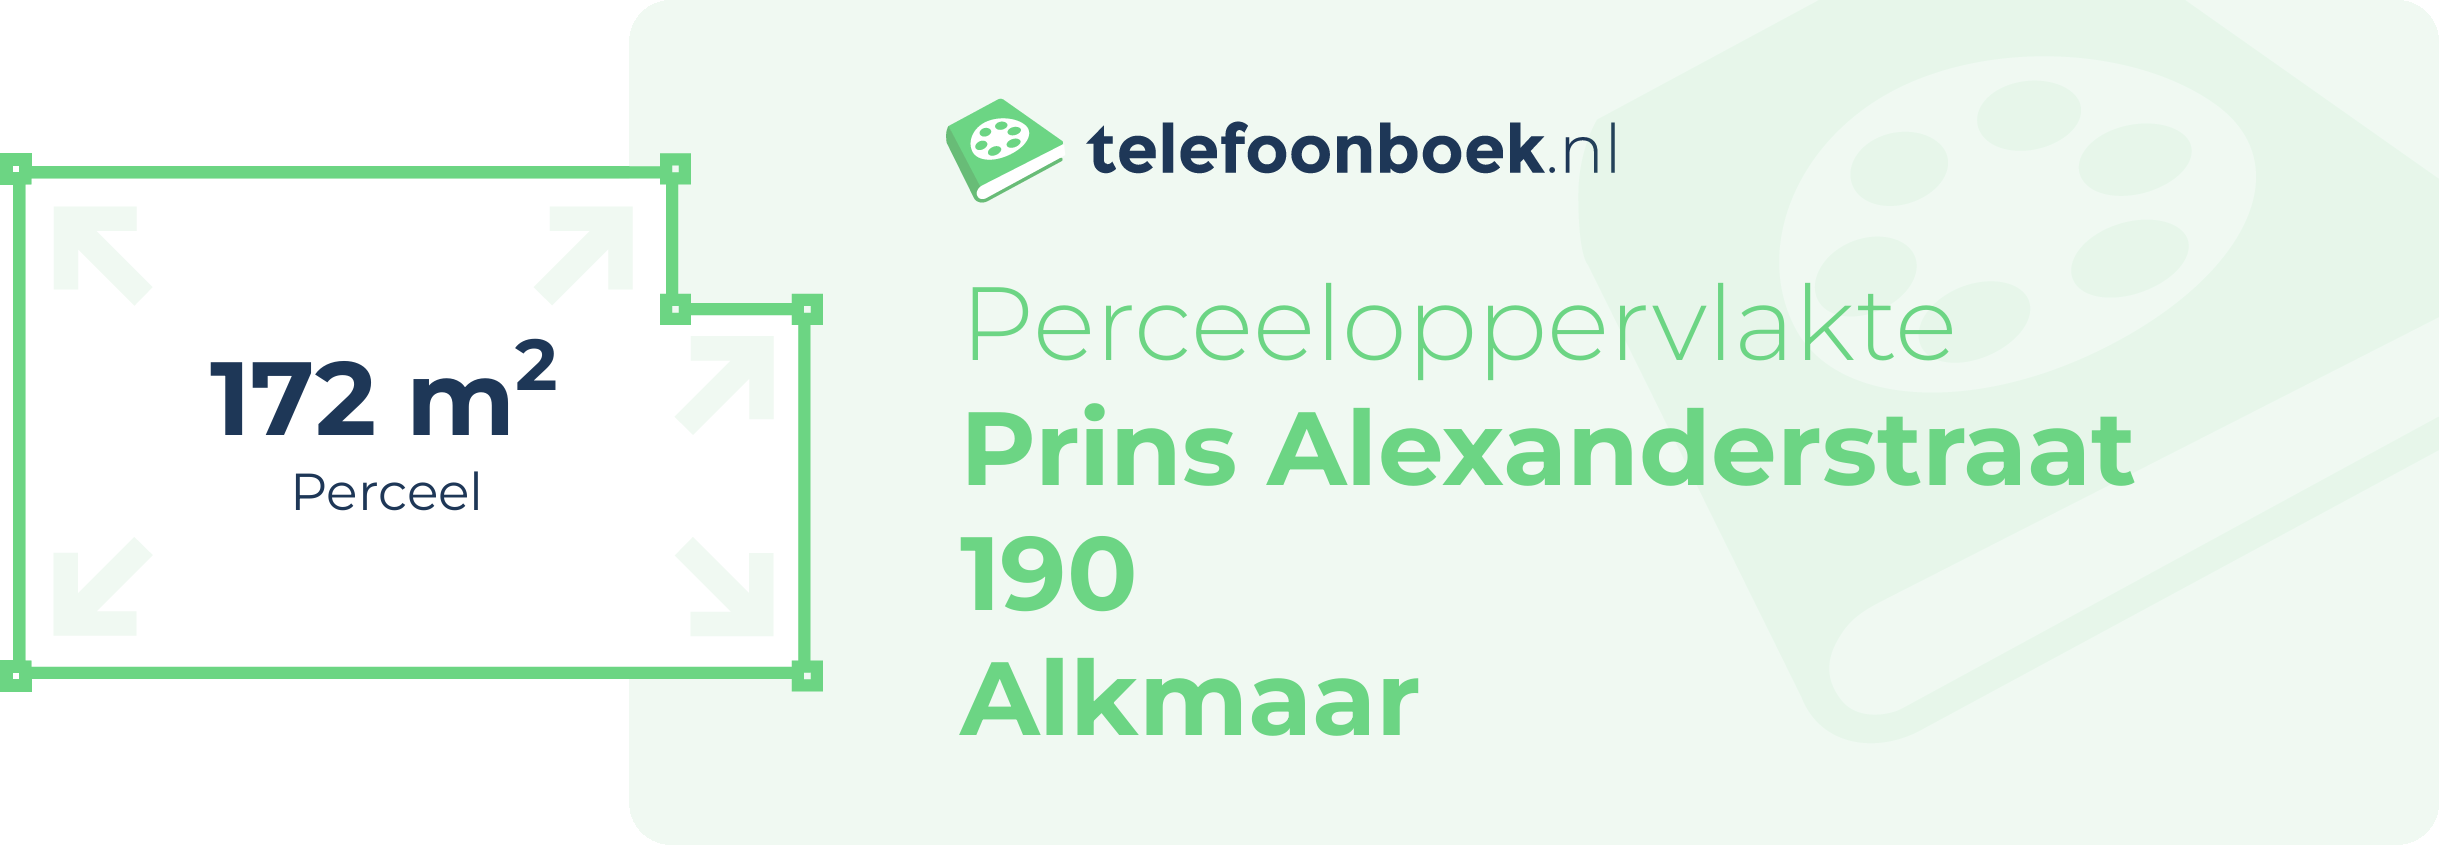 Perceeloppervlakte Prins Alexanderstraat 190 Alkmaar